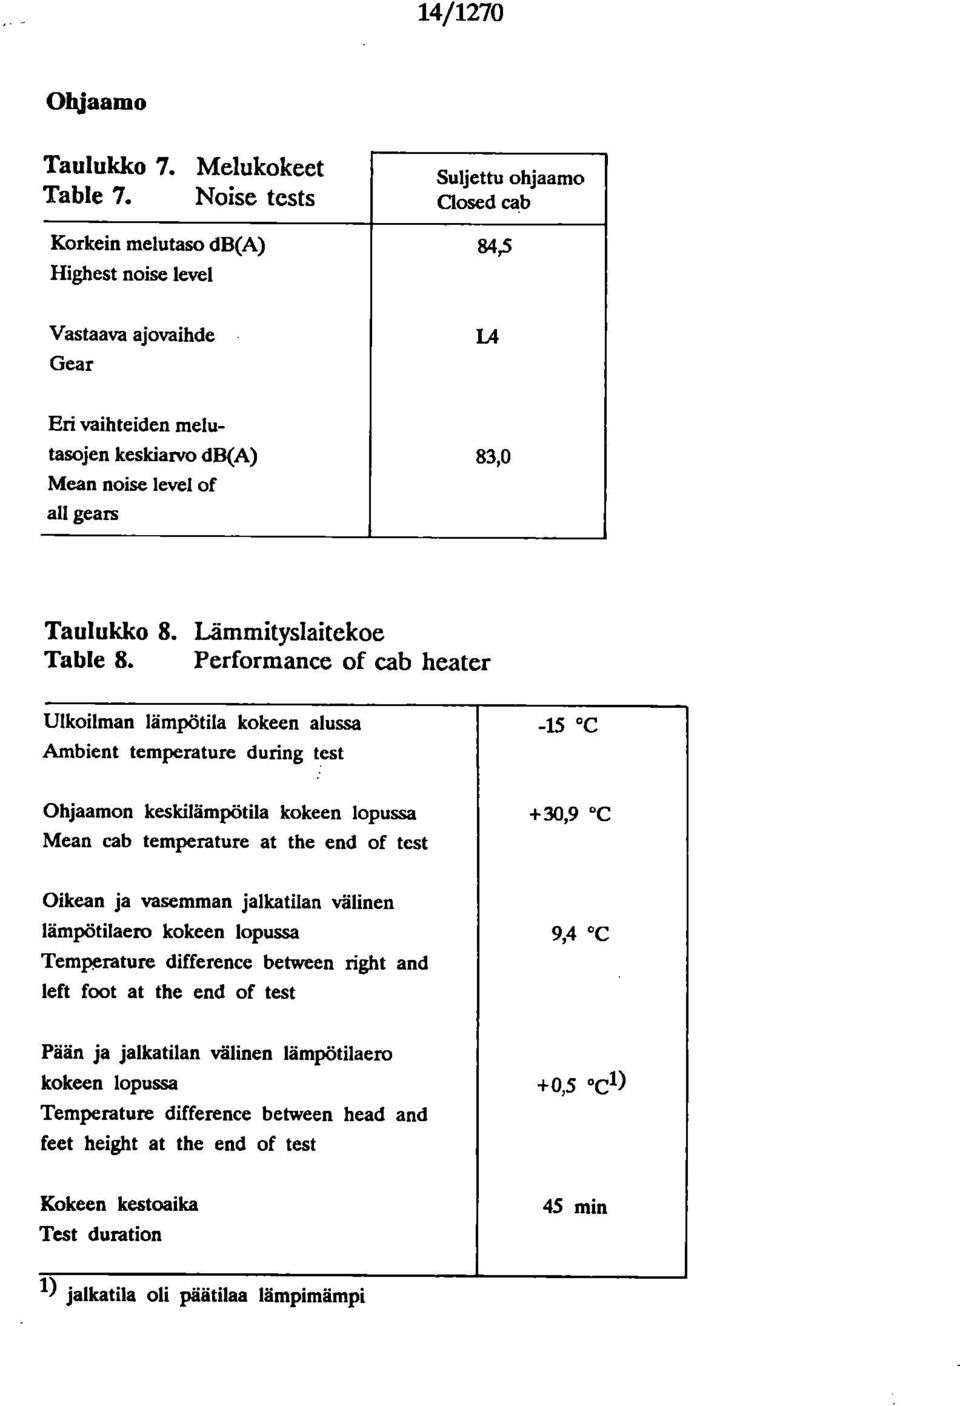 Taulukko 8. Lämmityslaitekoe Table 8.